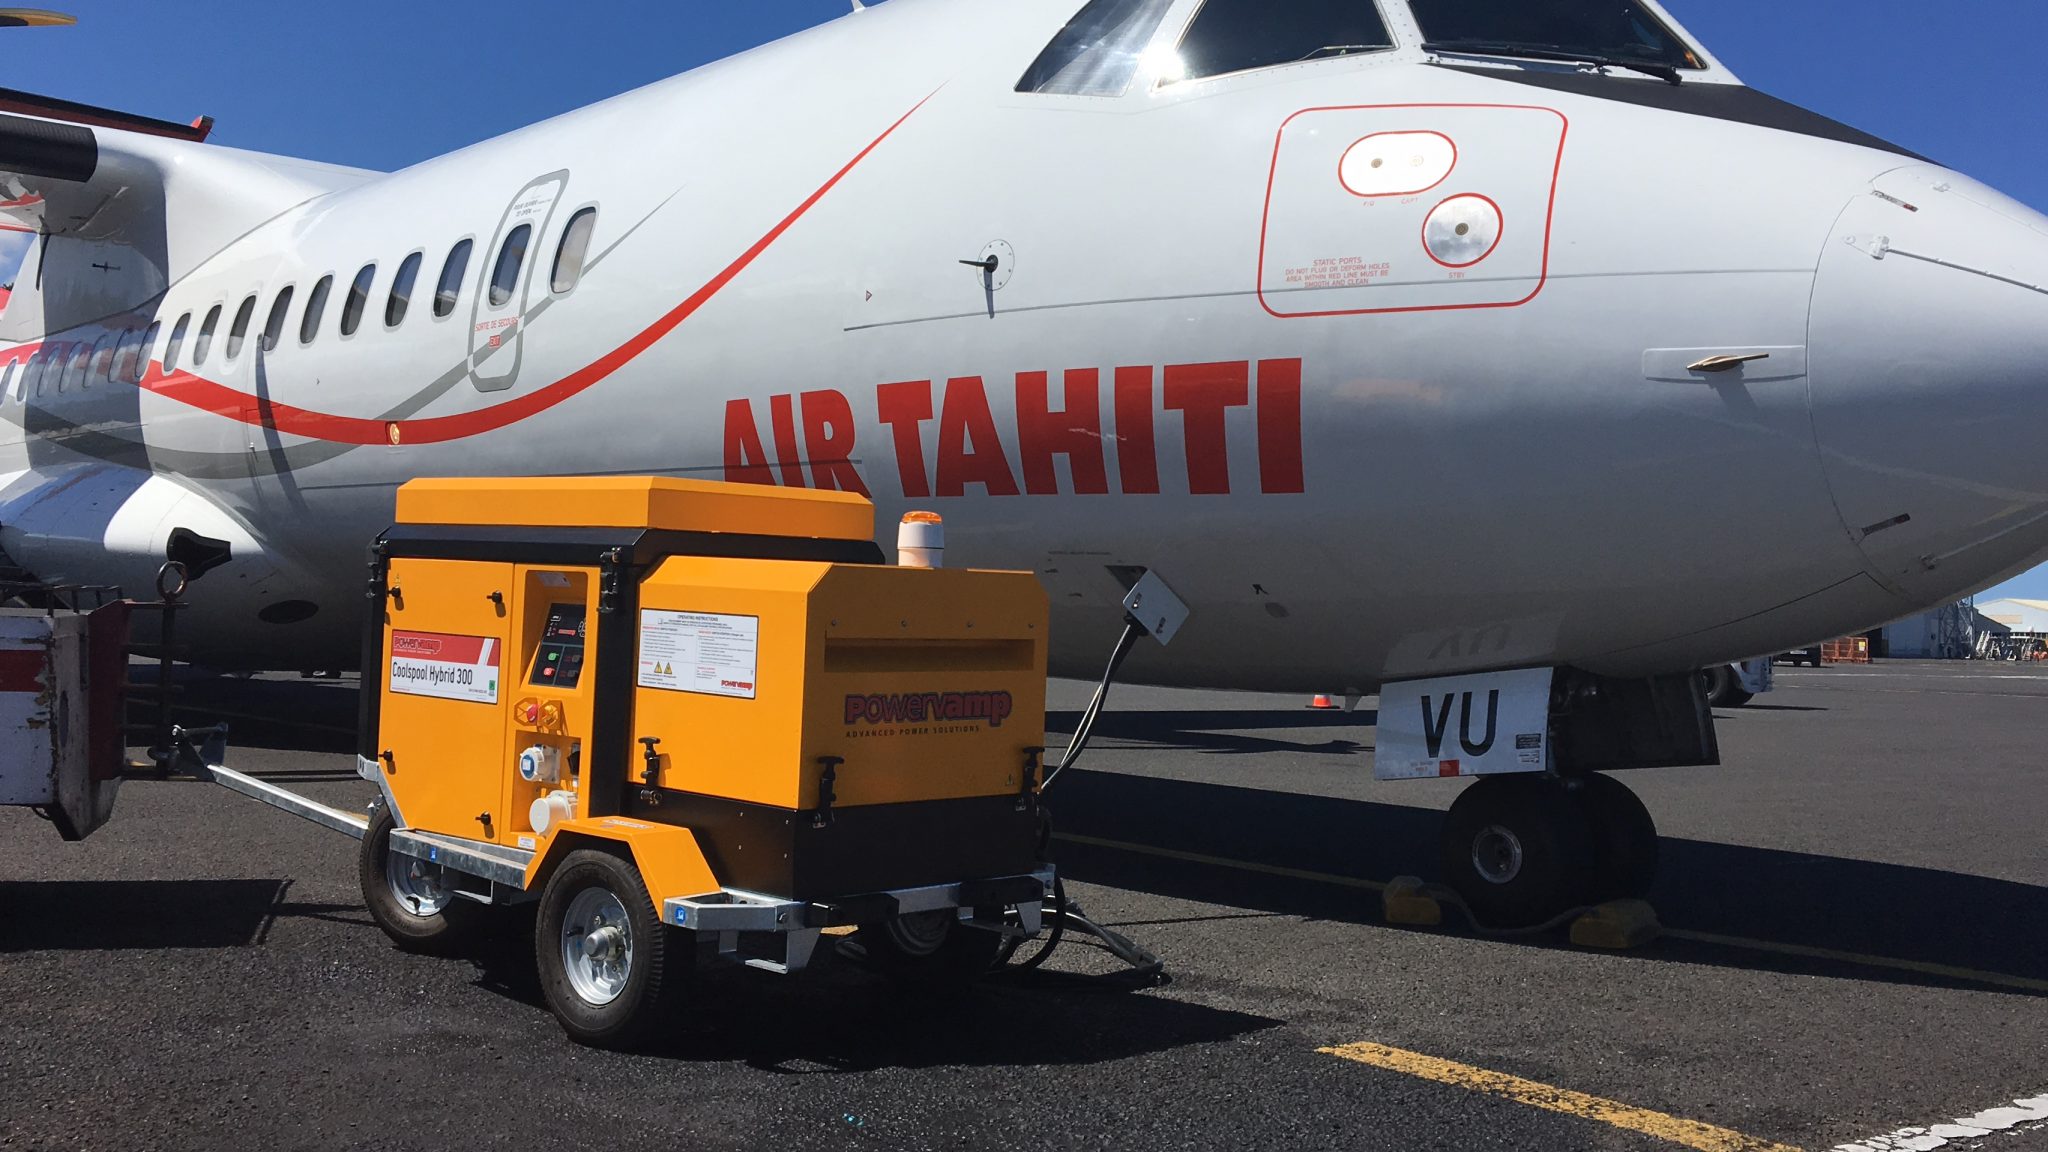 Coolspool hybrid 300 Air Tahiti